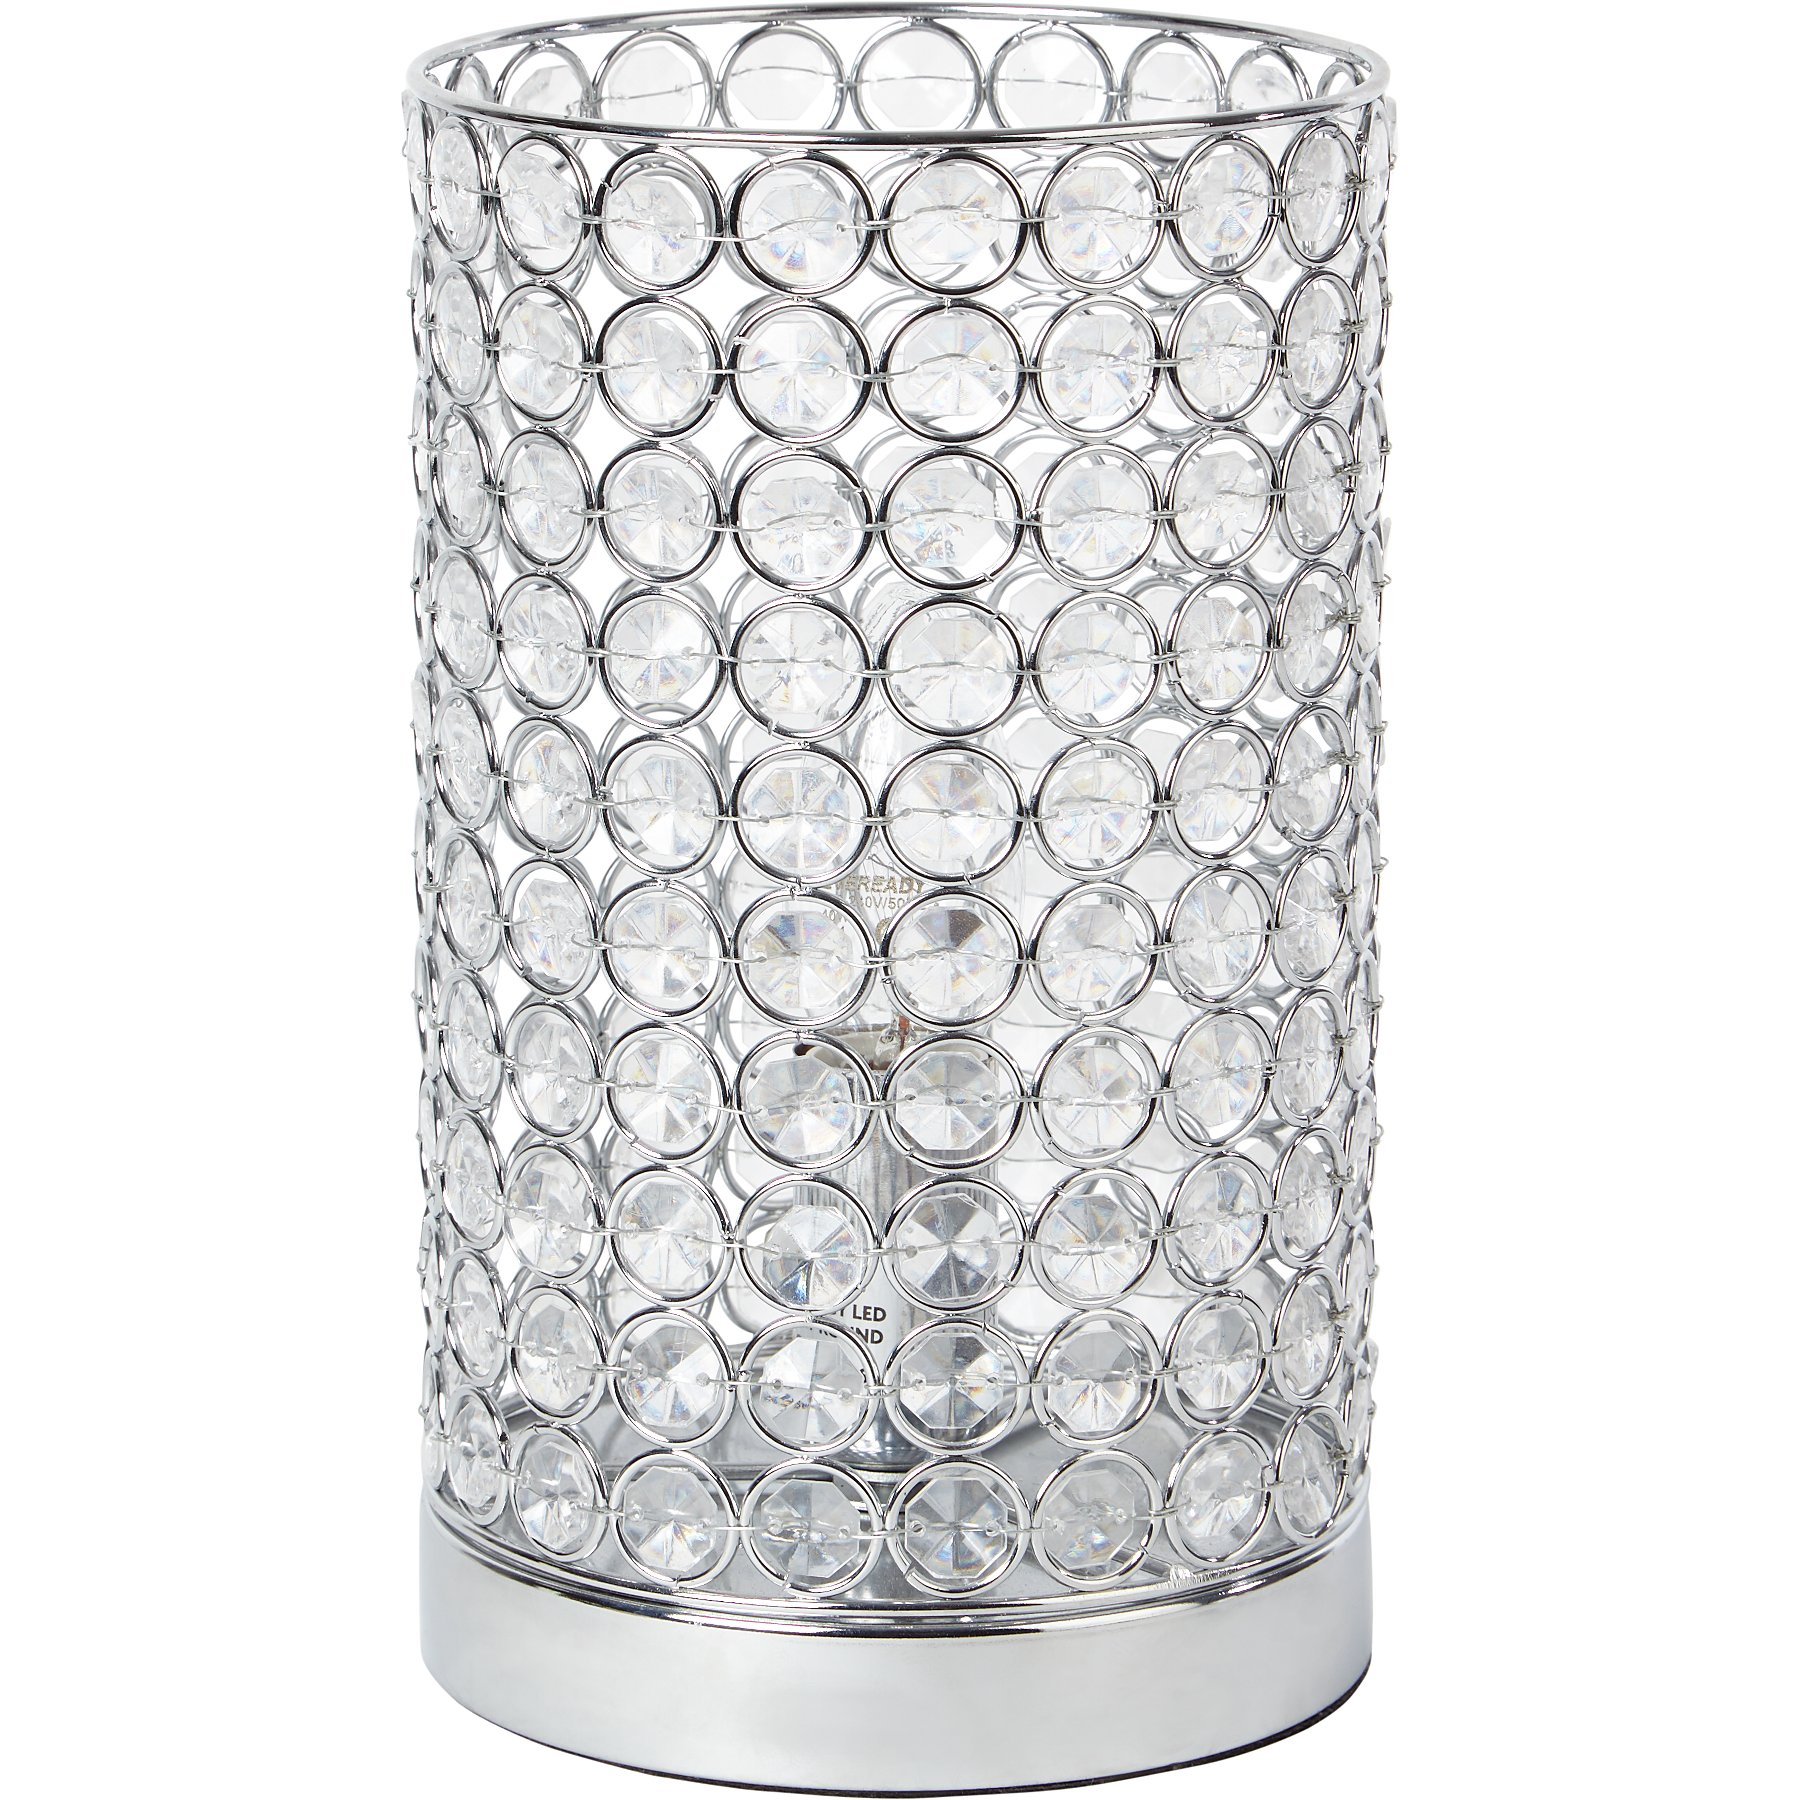 Acrylic Crystal Beaded Cylinder Lamp, Cylindrical Crystal Table Lamp